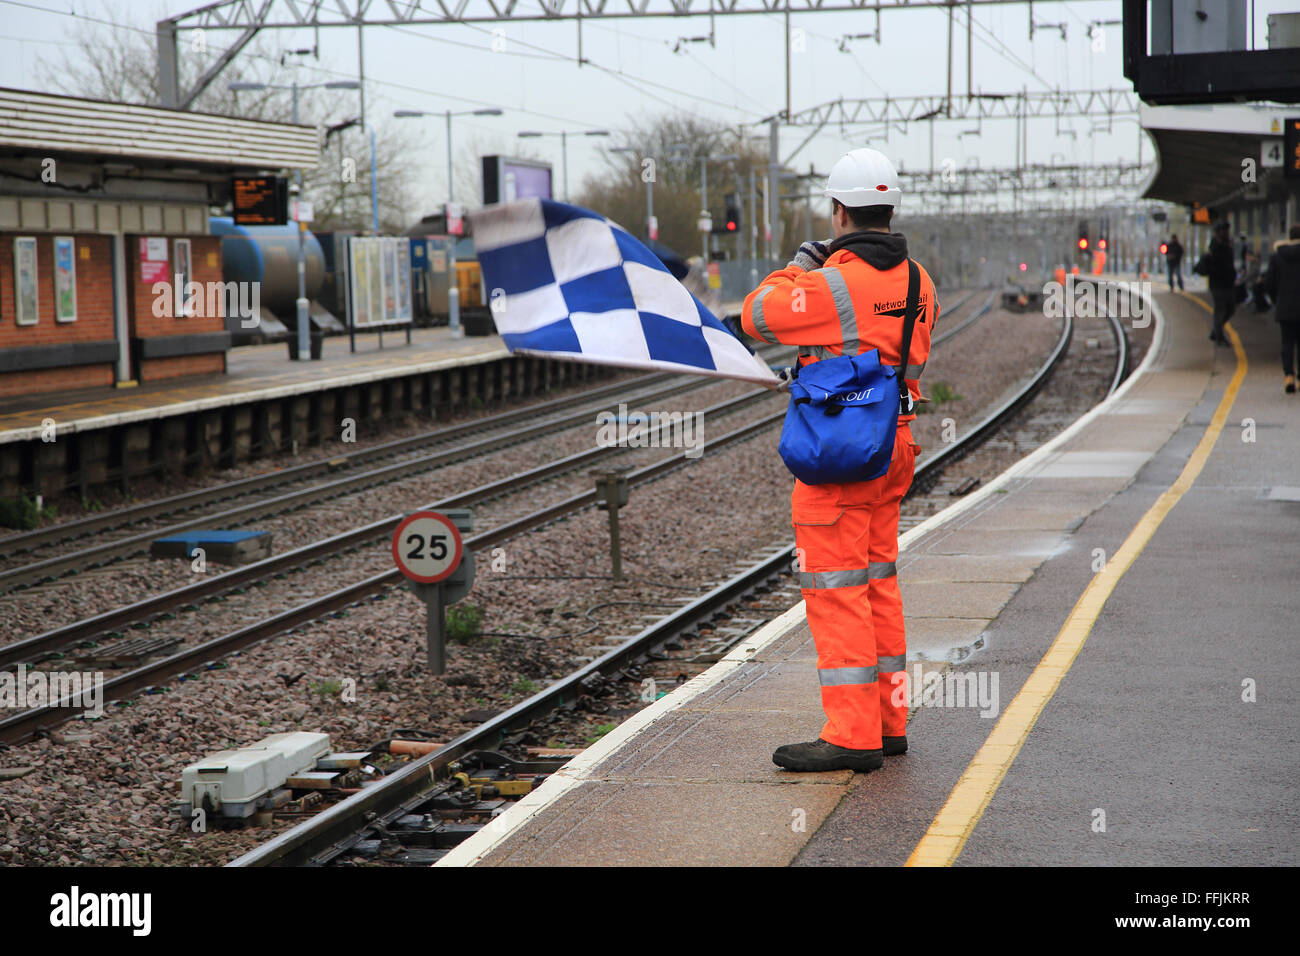 Employé des chemins de fer portant des vêtements haute visibilité orange tient à carreaux bleu et blanc du drapeau de sécurité, Colchester, Essex, Angleterre, Royaume-Uni Banque D'Images